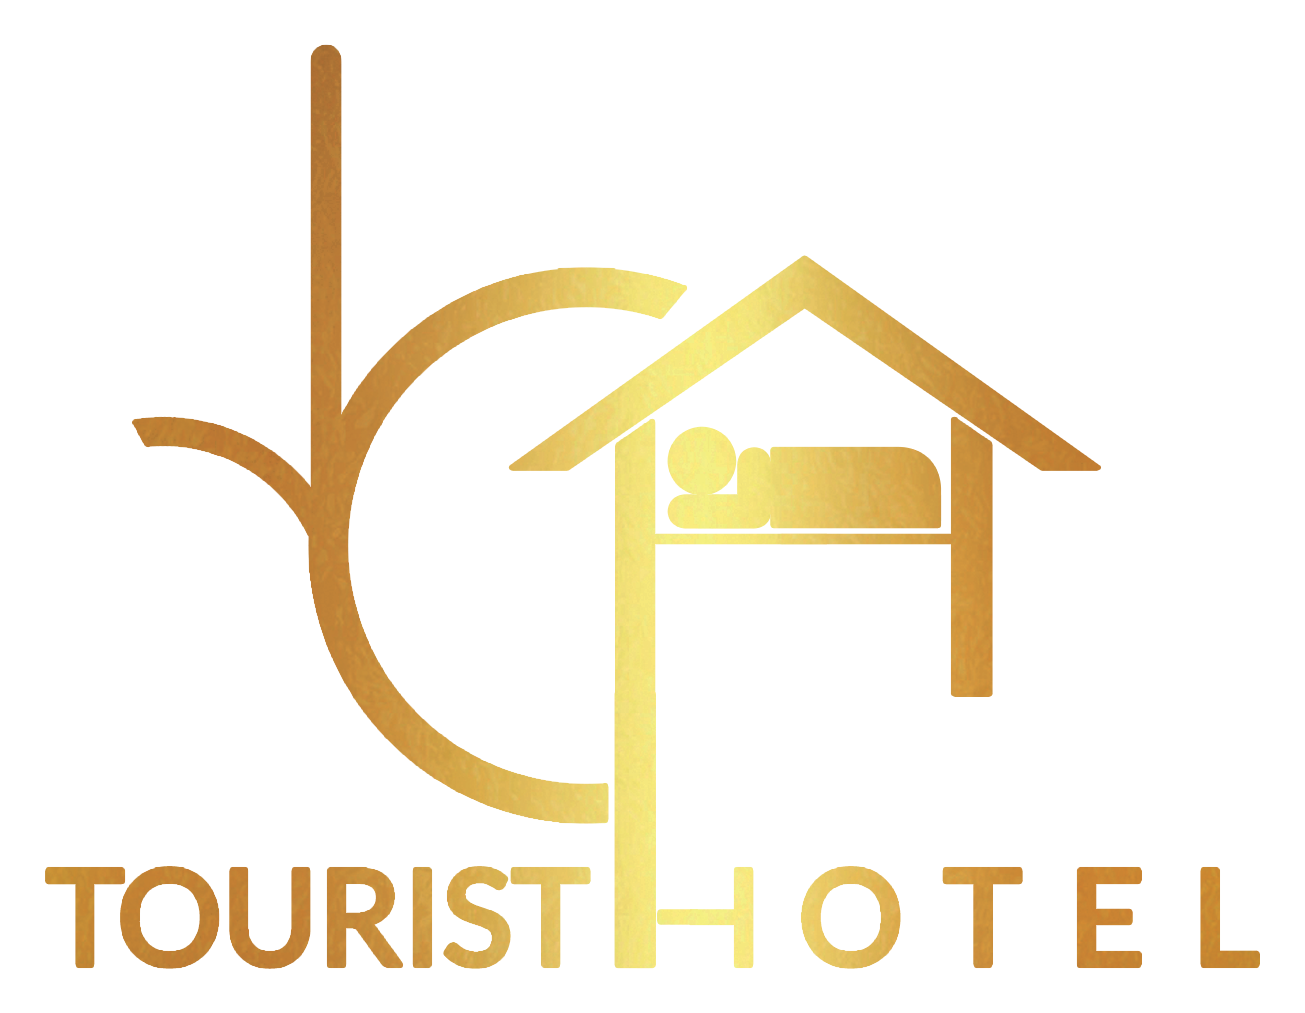 فنادق وسط البلد رخيصة - حجز فندق بوسط البلد - فندق وسط البلد